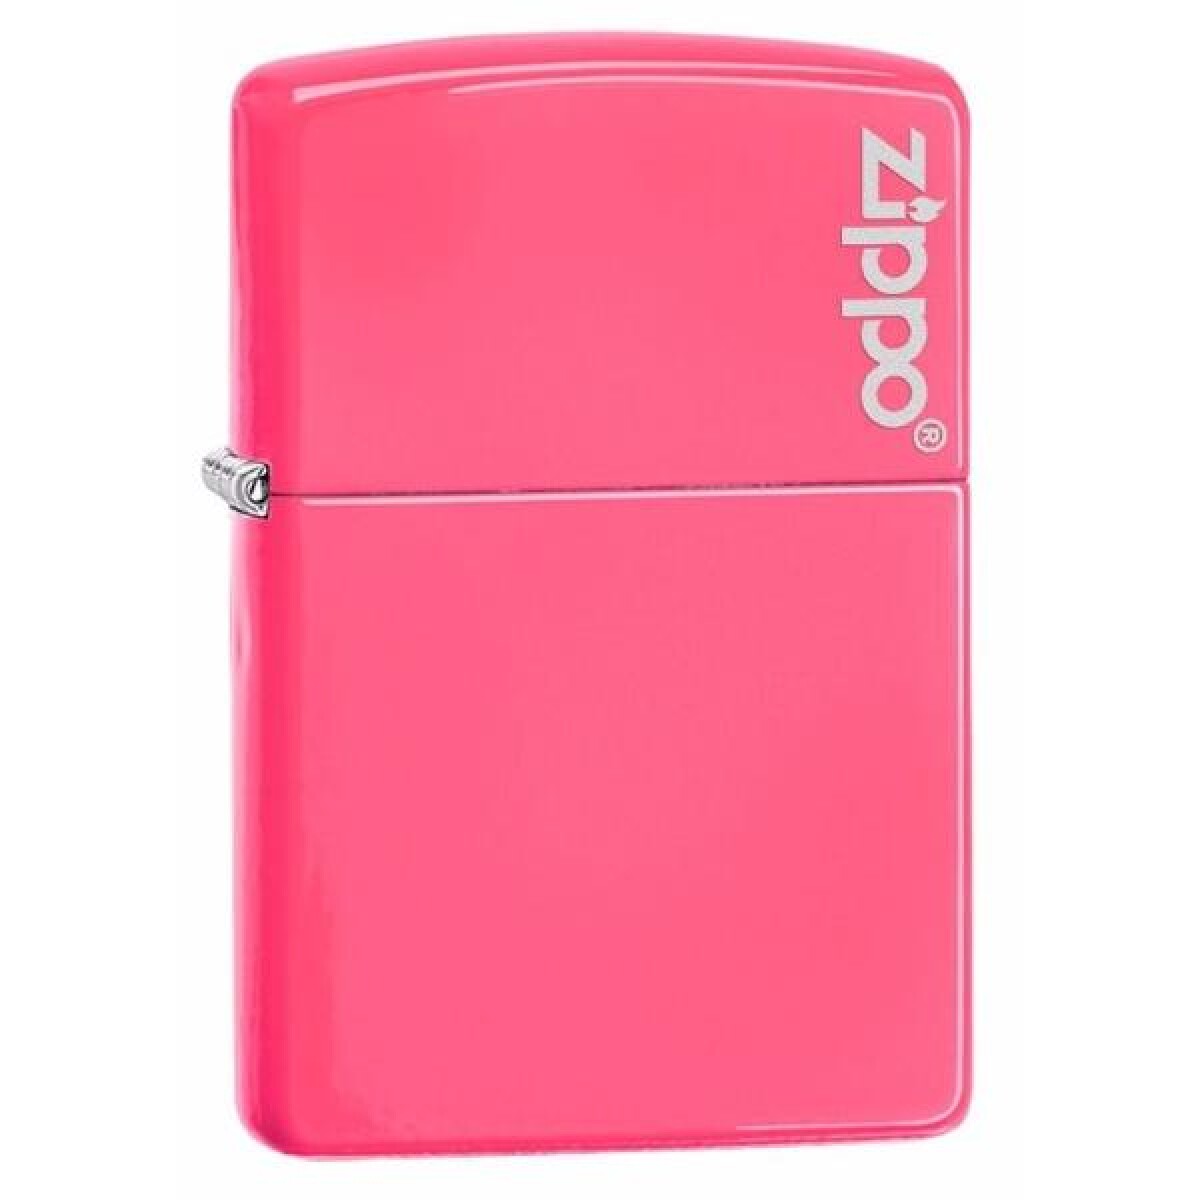 Encendedor Zippo Neon Pink, Laser Engr 